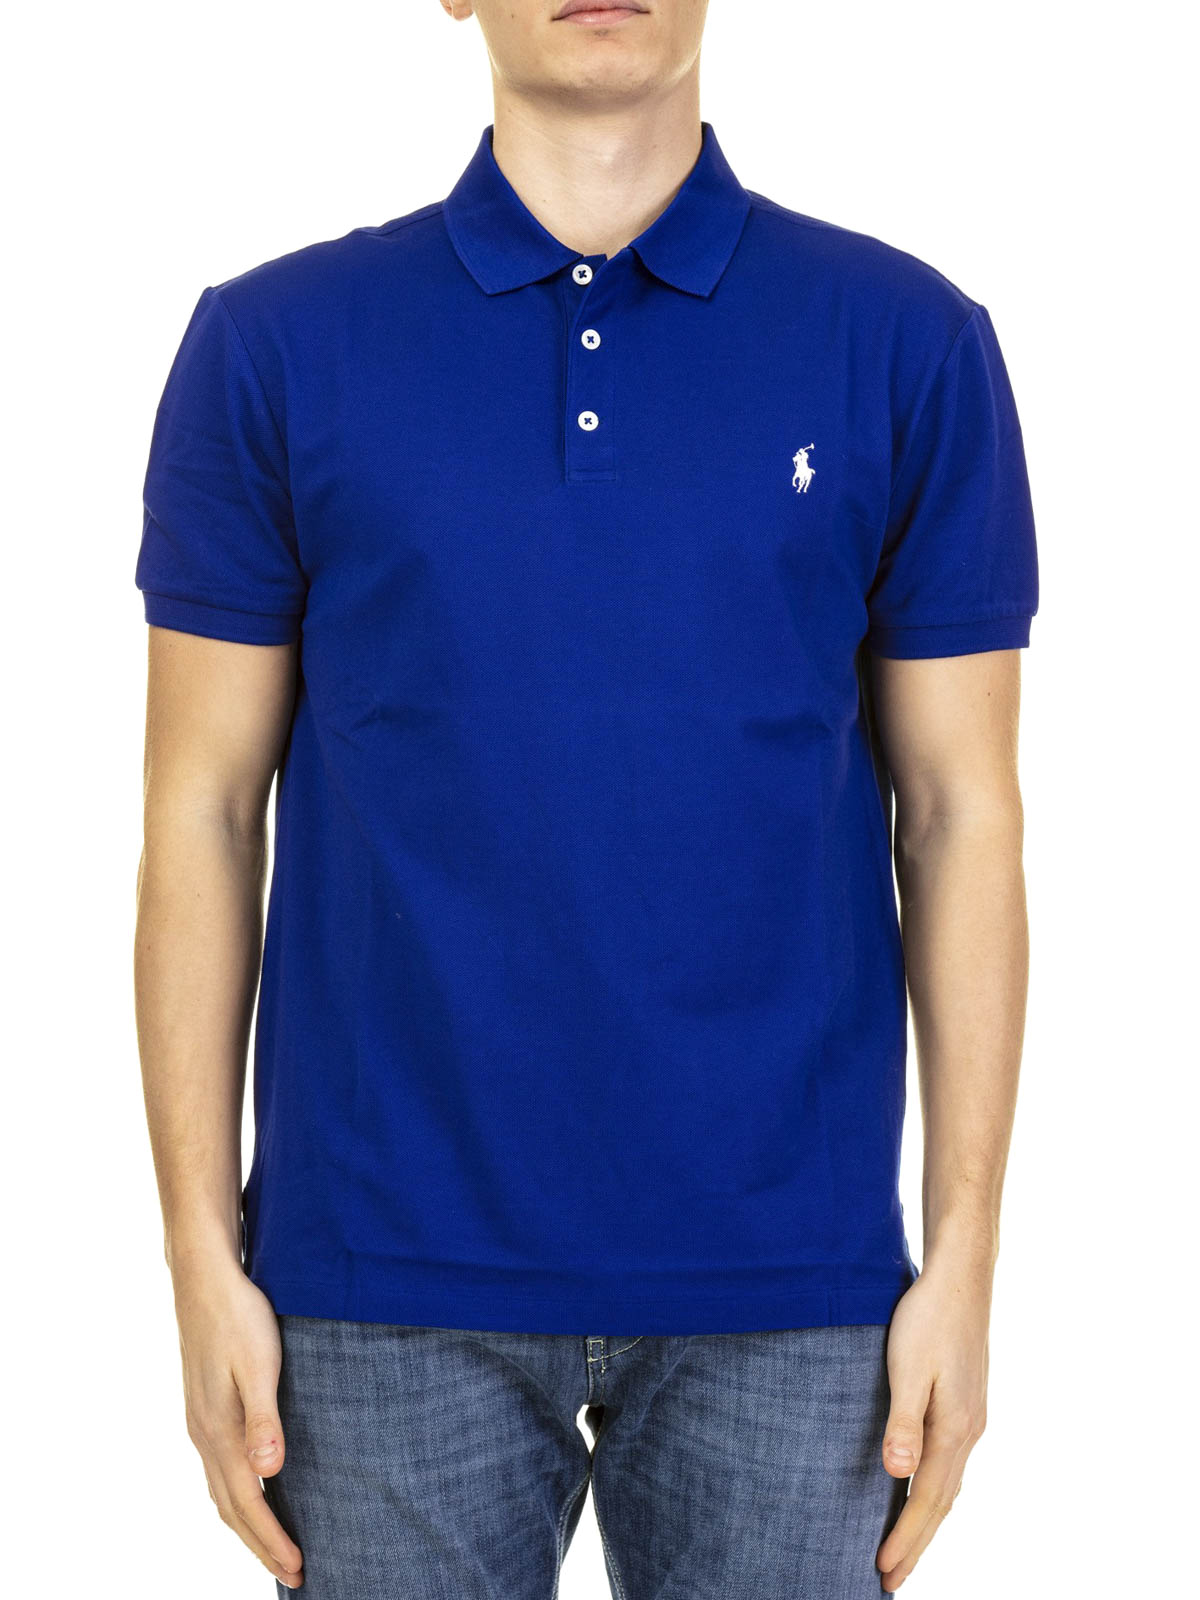 royal blue ralph lauren polo shirt